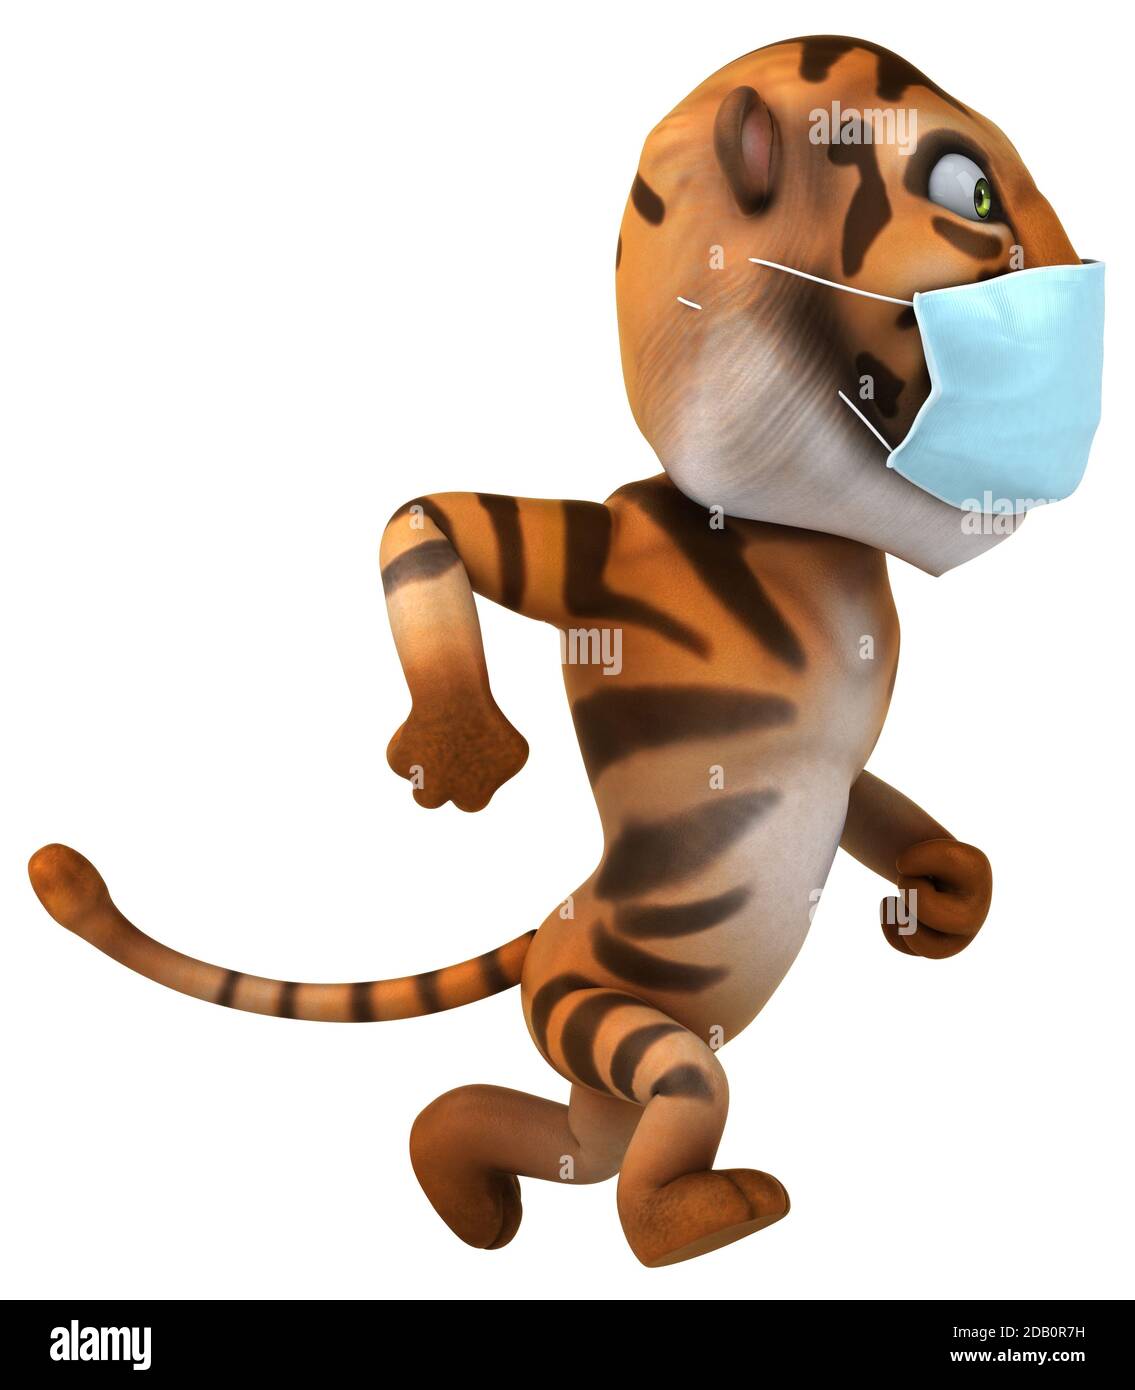 Fun 3D cartoon tiger with a mask Stock Photo - Alamy